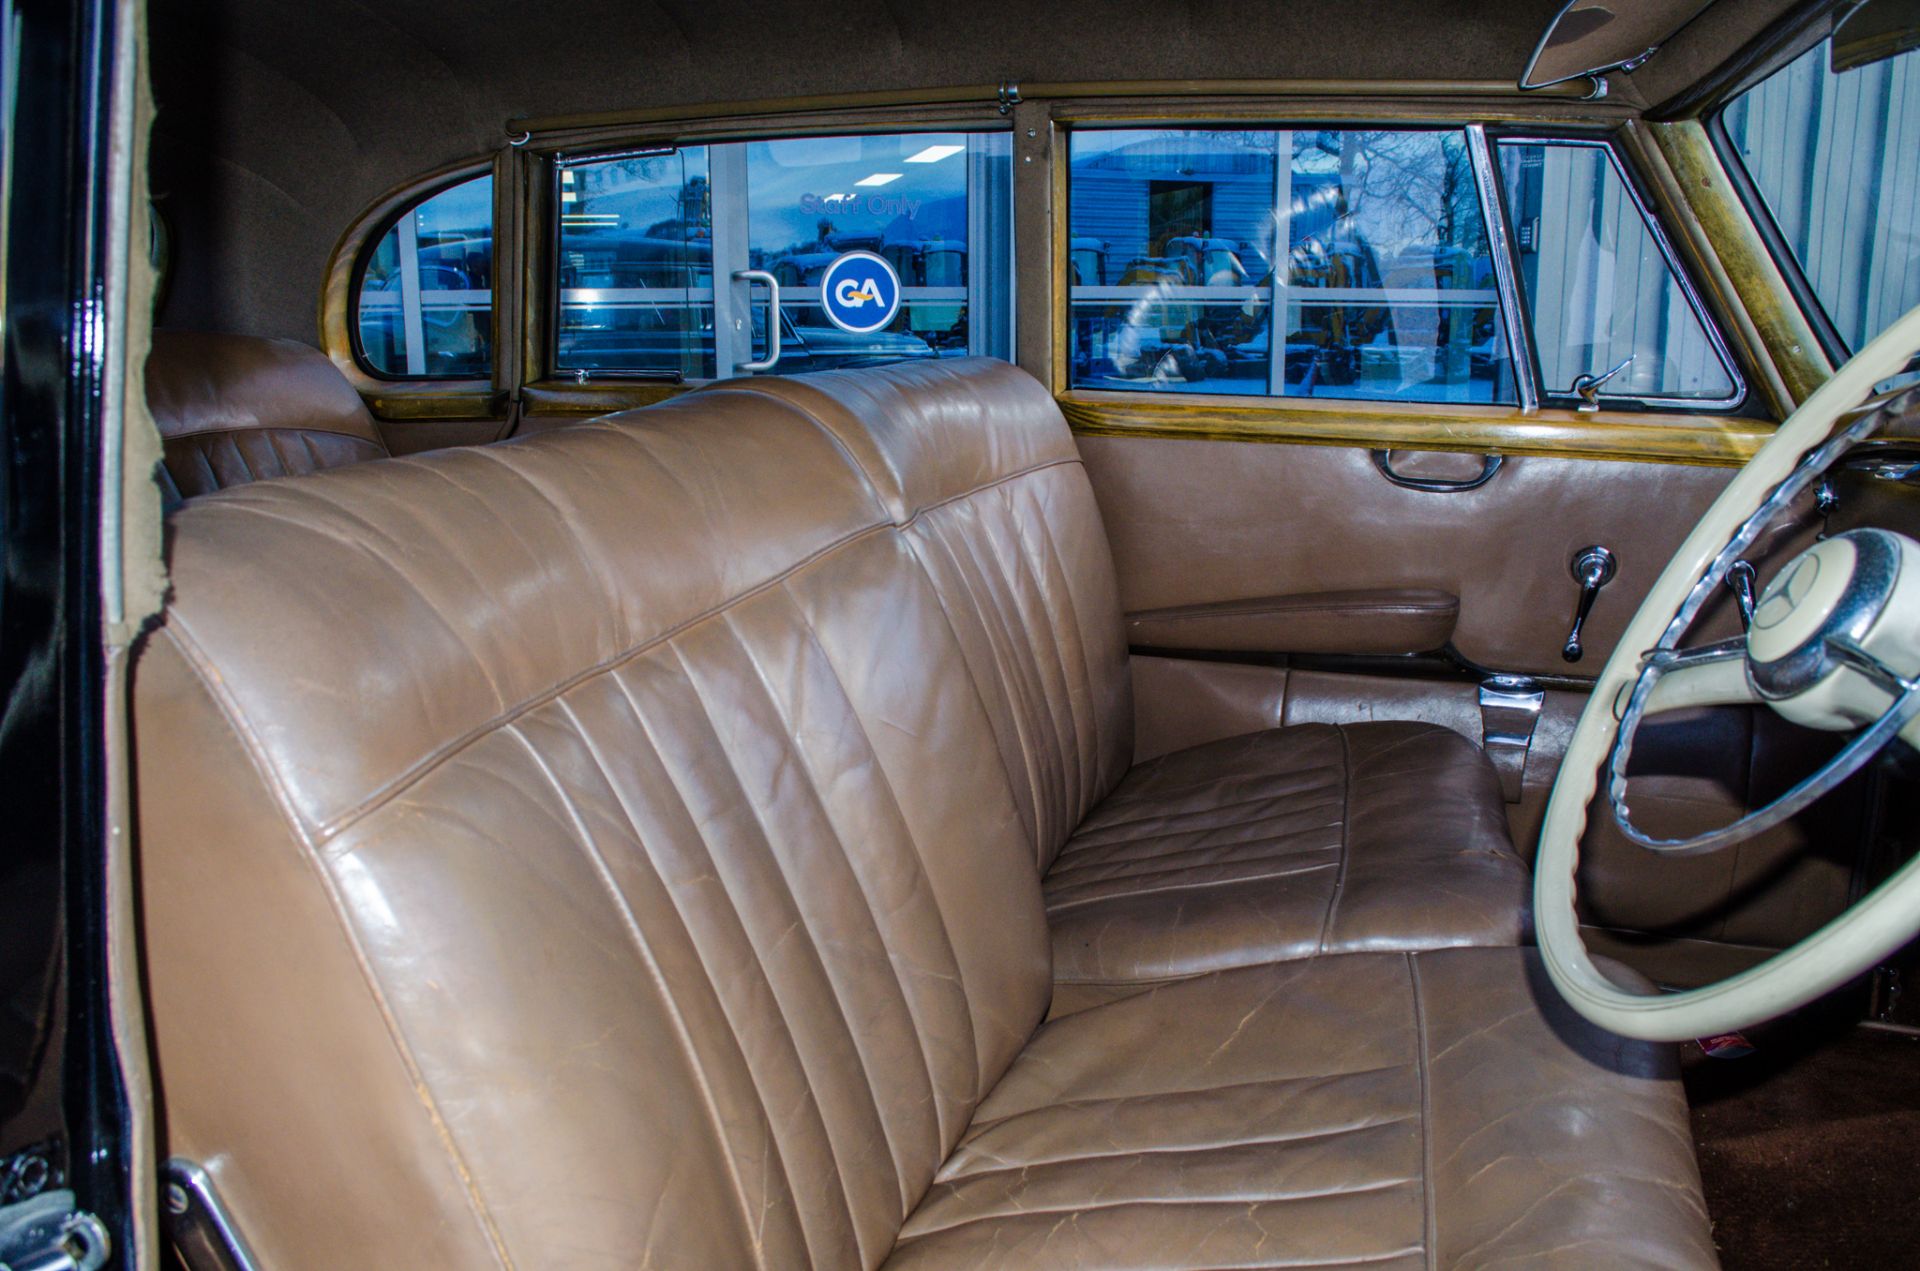 1956 Mercedes Benz 300 Adenauer 3 litre automatic 4 door saloon - Image 37 of 63